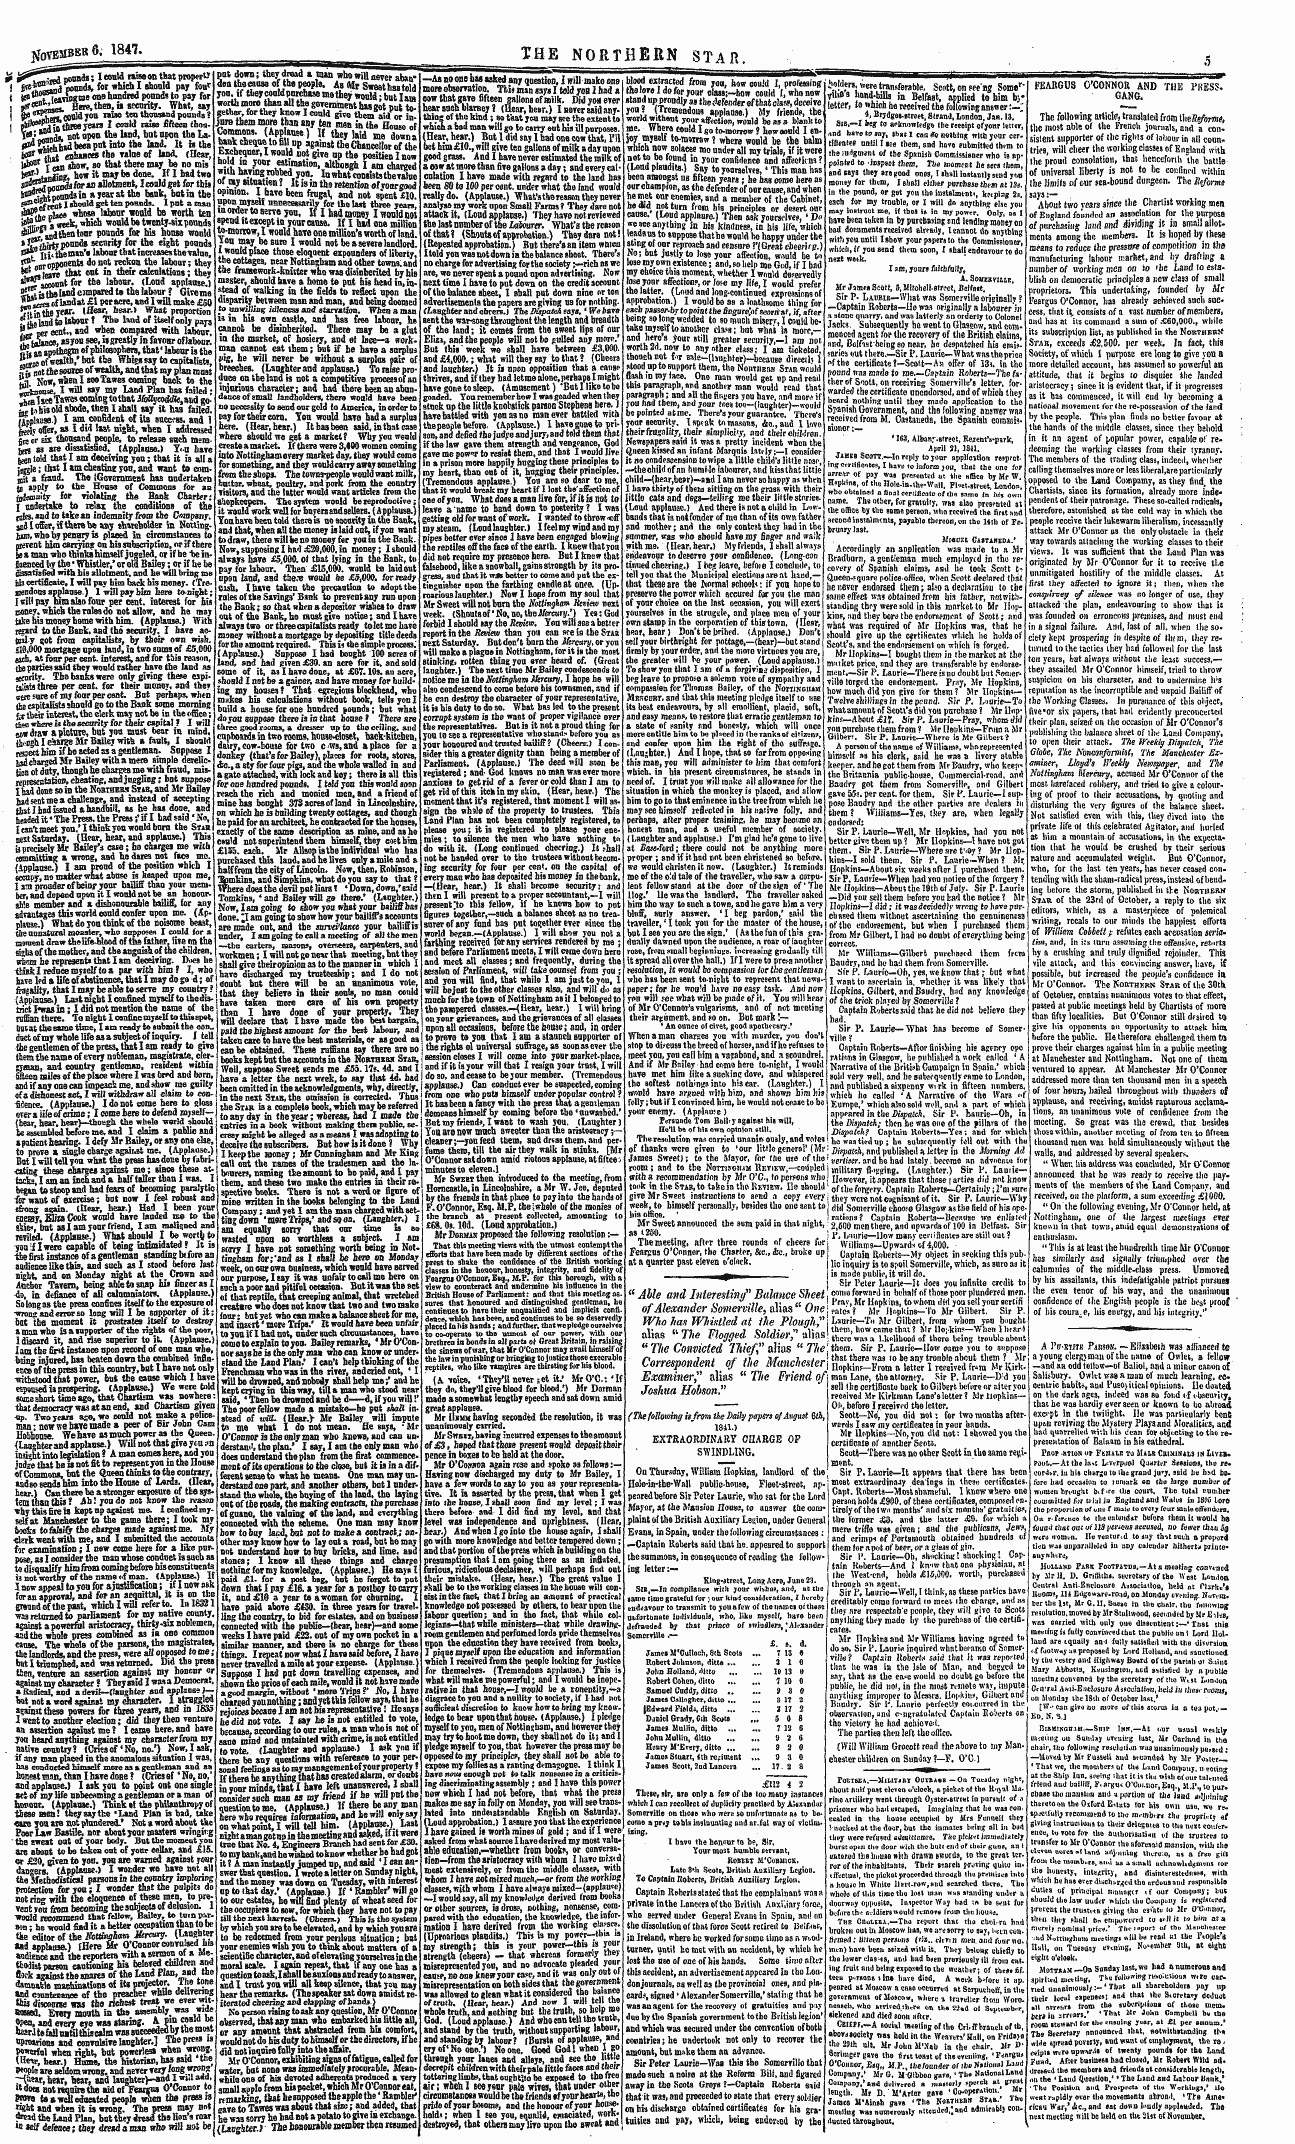 Northern Star (1837-1852): jS F Y, 3rd edition - A Pcm-Titu Parson. -—Elizabeth Was Affia...